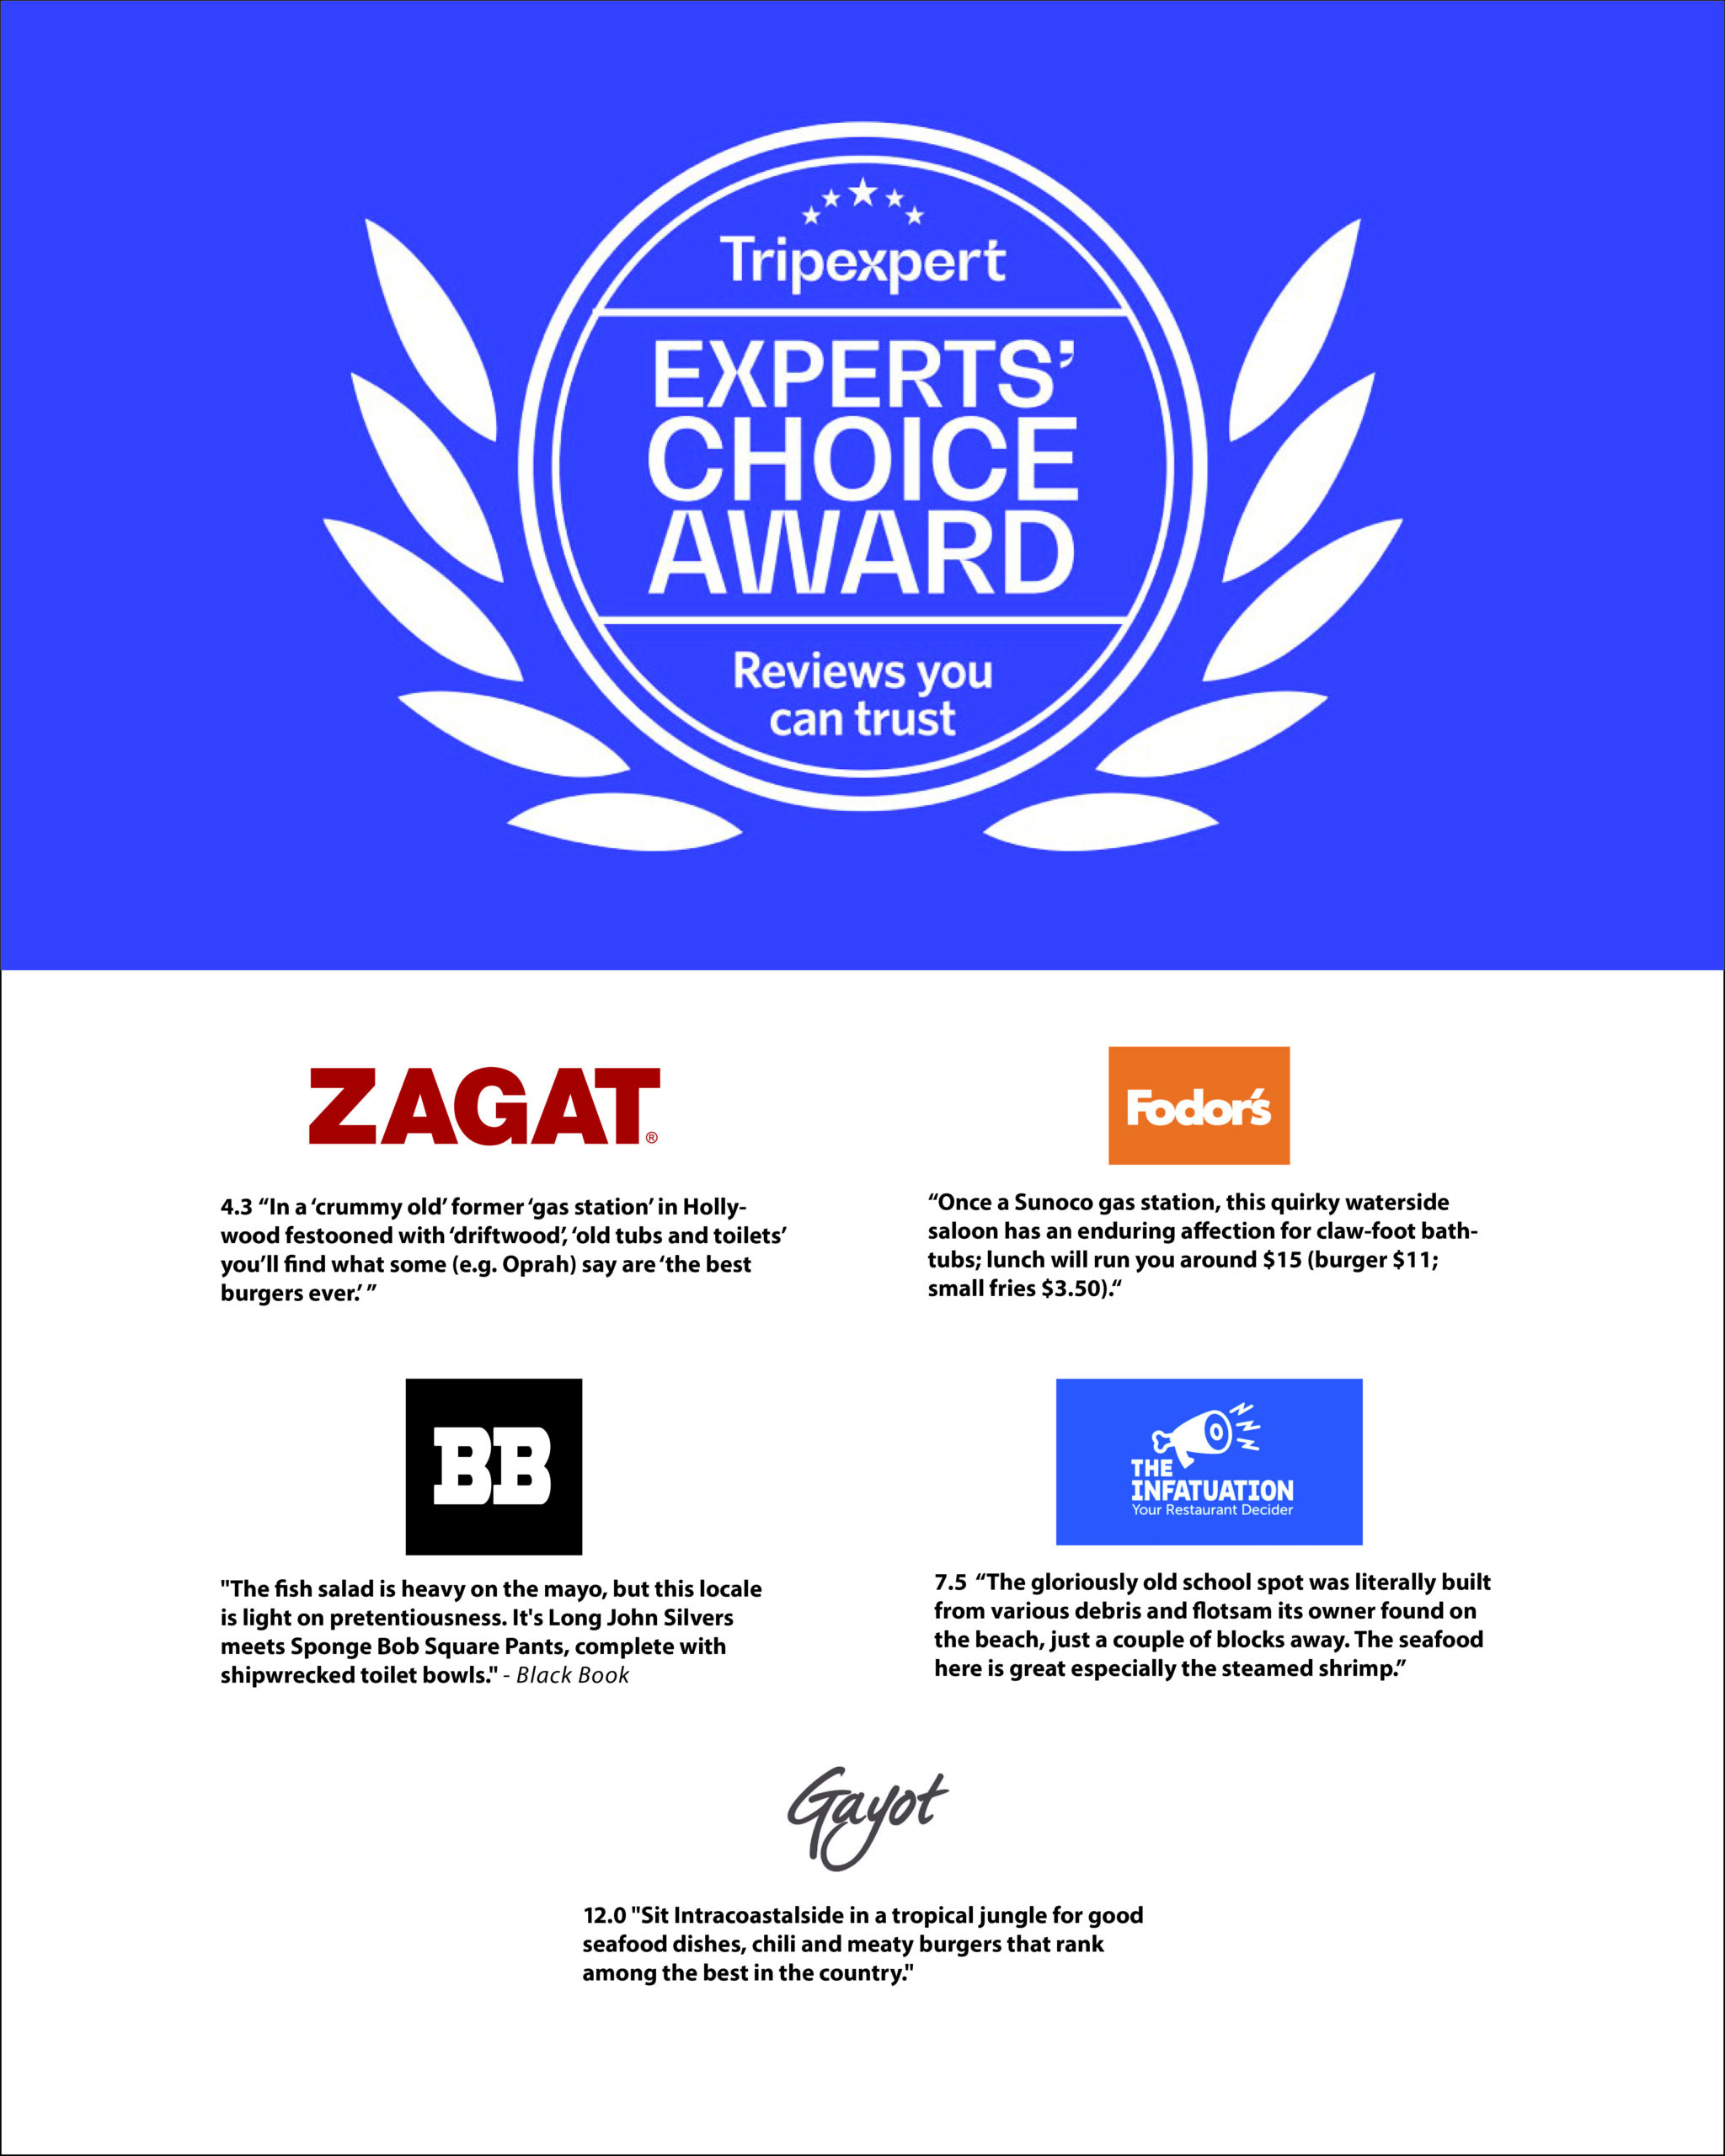 Experts' choice awards